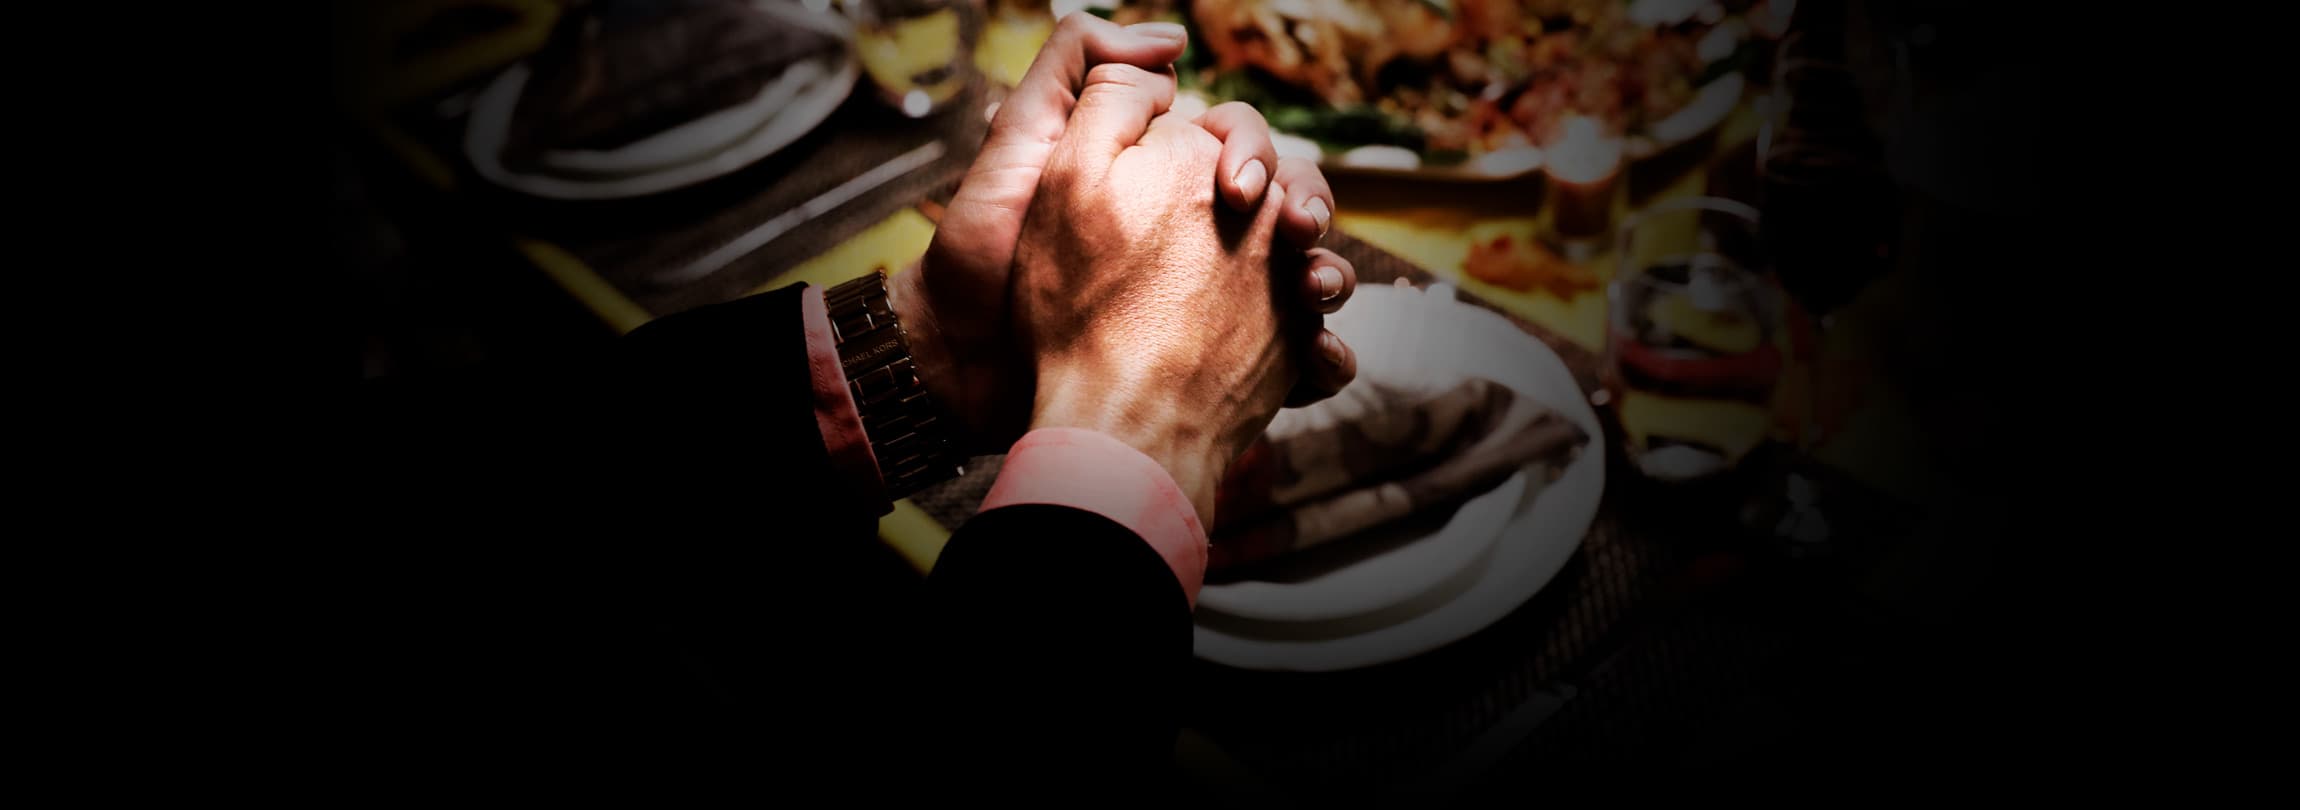 A importância de rezar antes das refeições